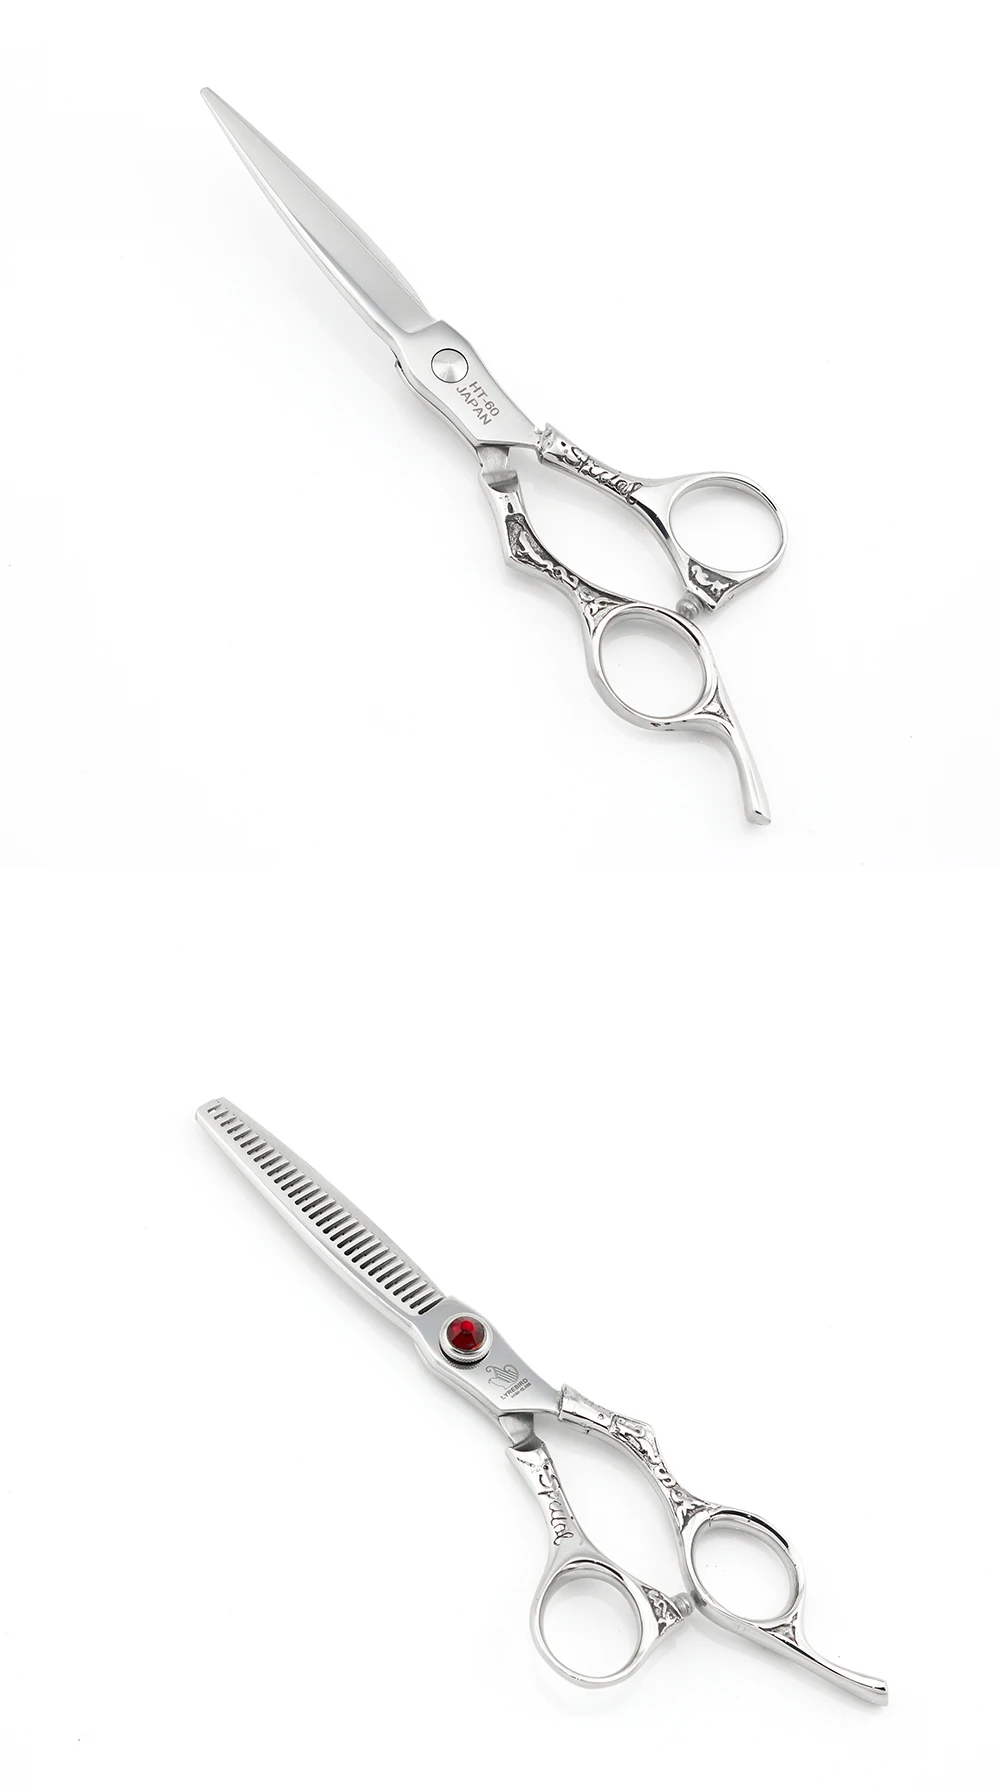 Профессиональные ножницы для волос 6 дюймов ножницы для волос Япония 440C парикмахерские ножницы Меч Лезвие красный камень винт Lyrebird высокого класса Новинка